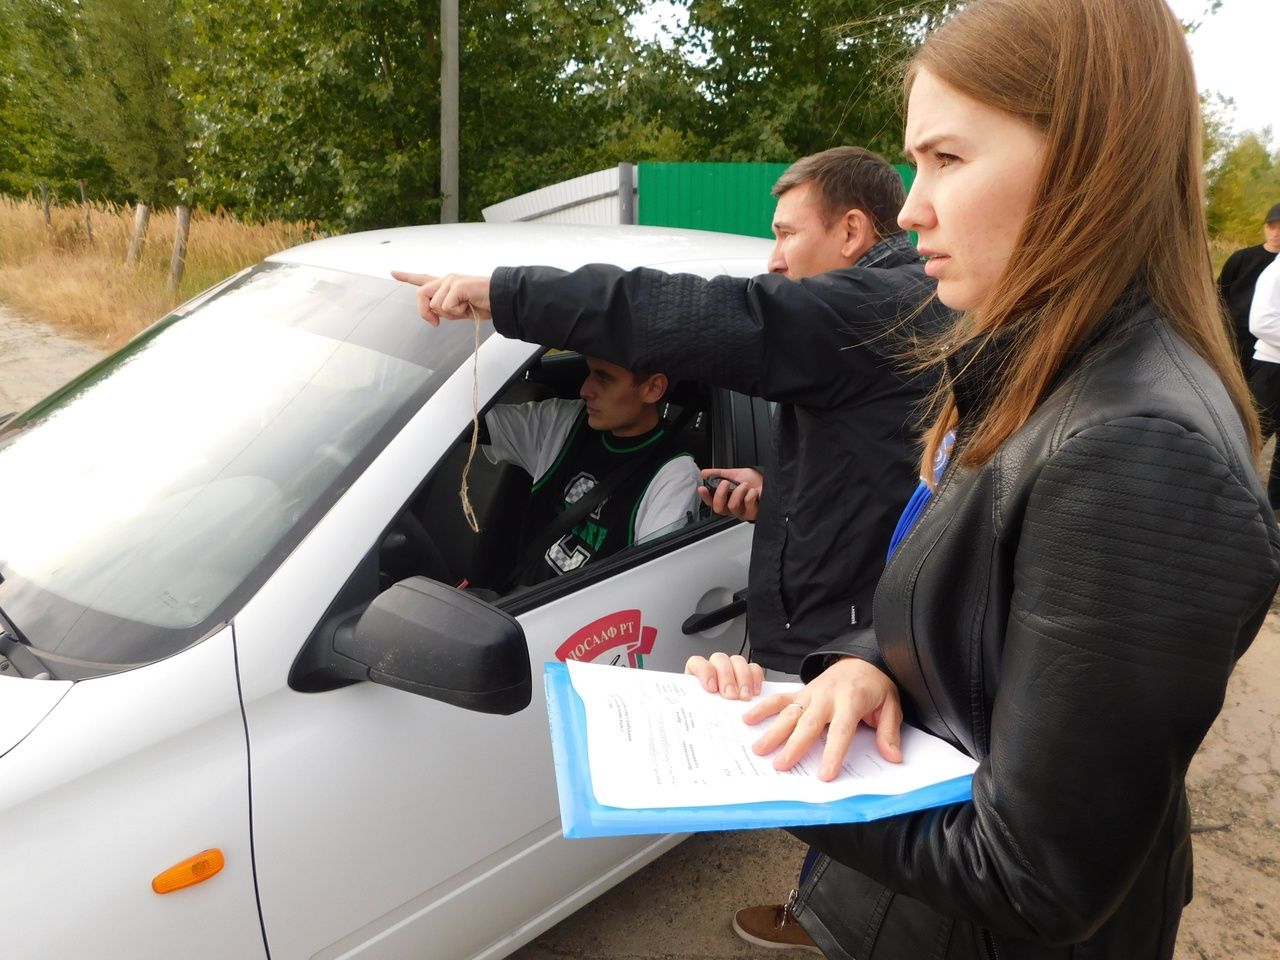 В Тетюшах проведен районный конкурс среди студентов-автомобилистов «Автосессия - 2022»